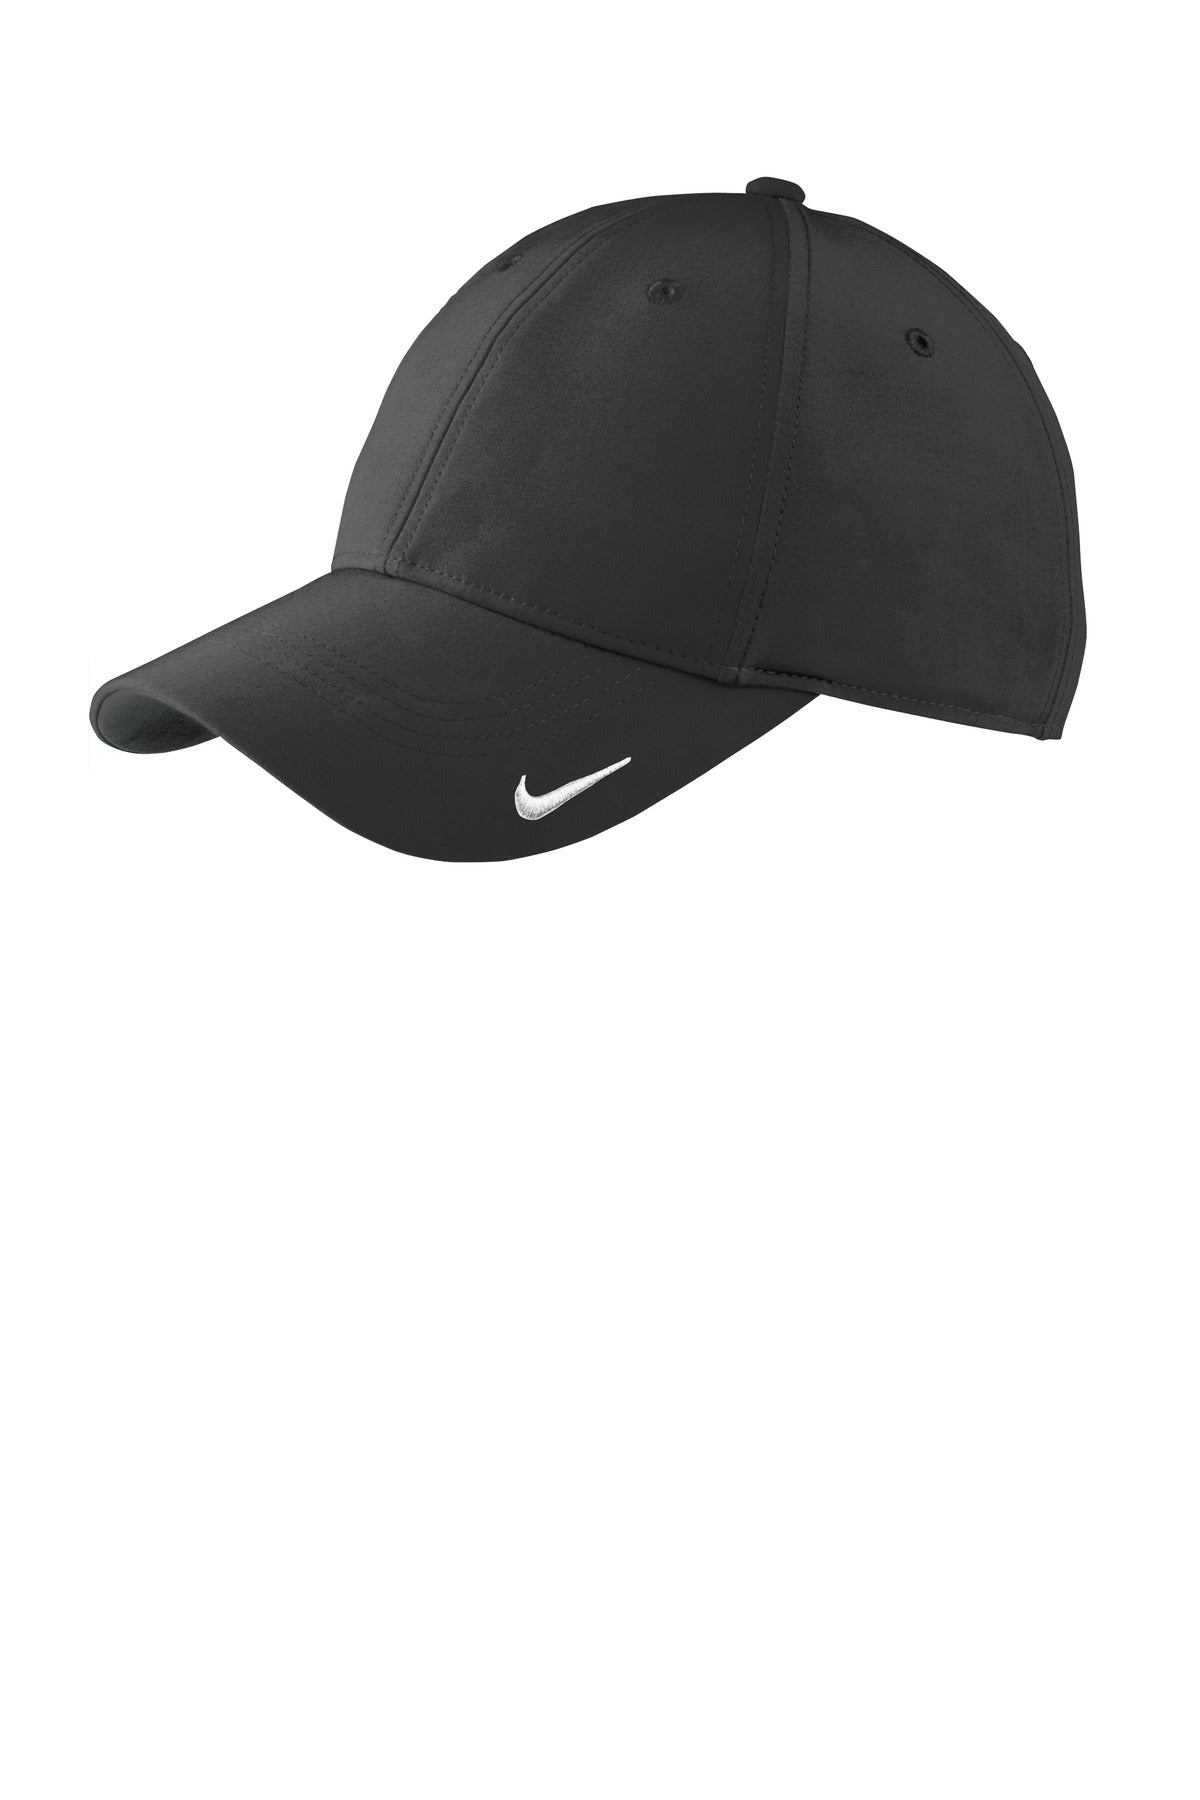 Caps Black/ Black OSFA Nike